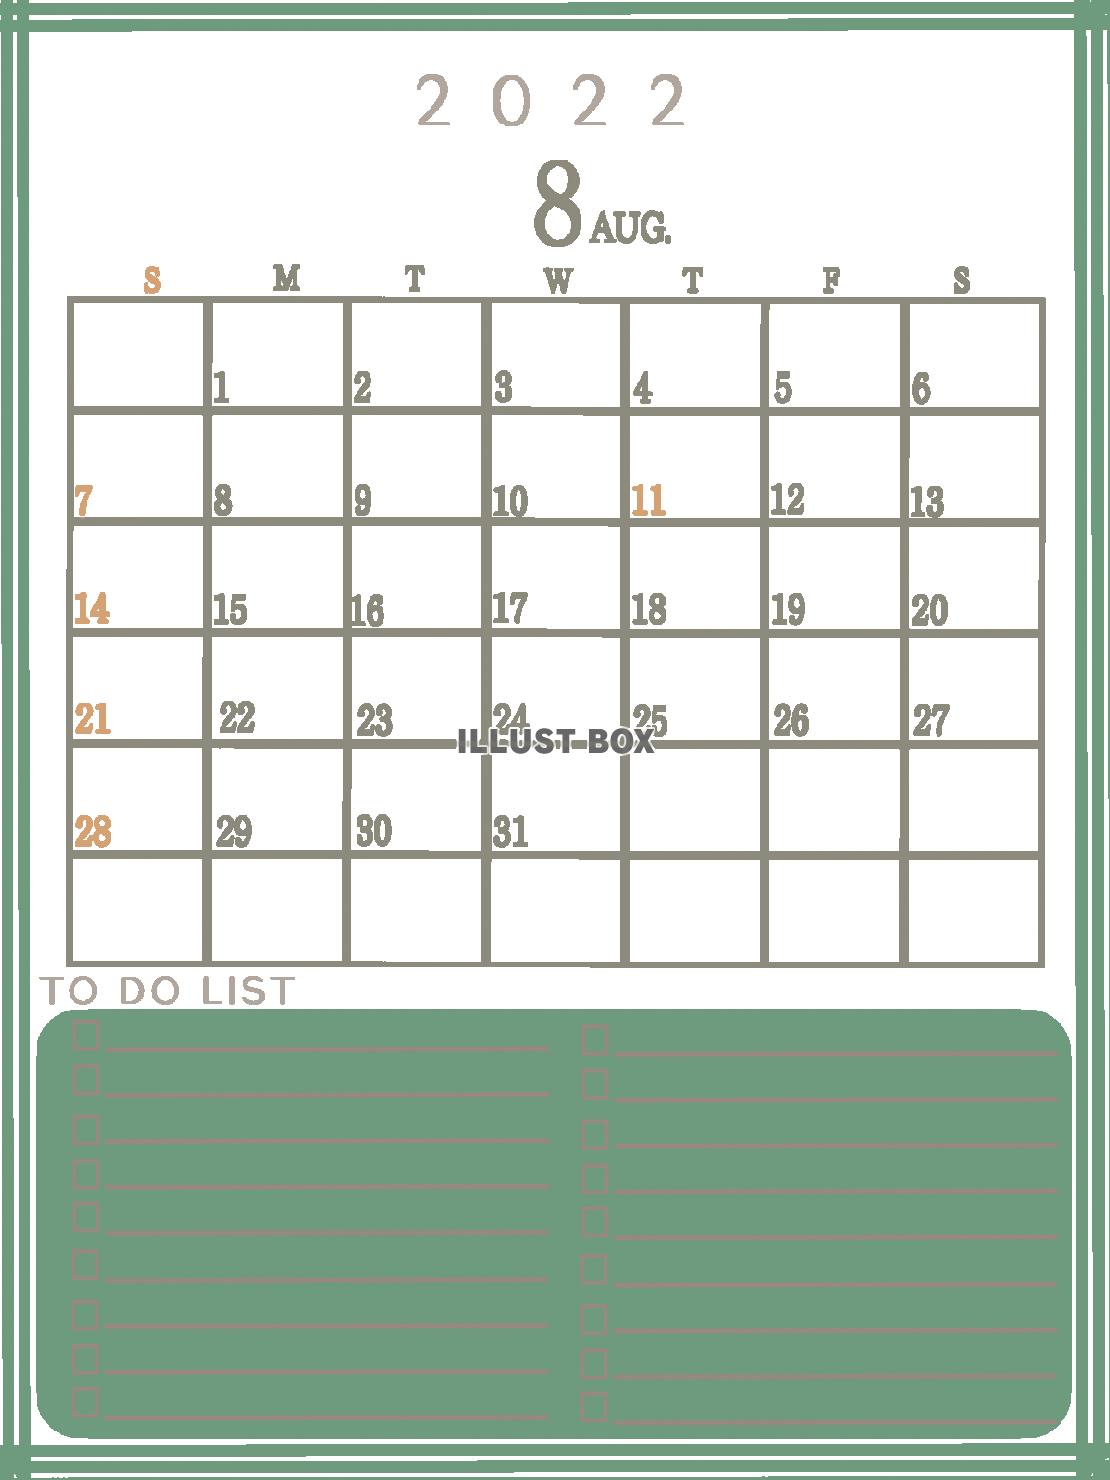 ２０２２年　TODOリストのあるカレンダー（８月）